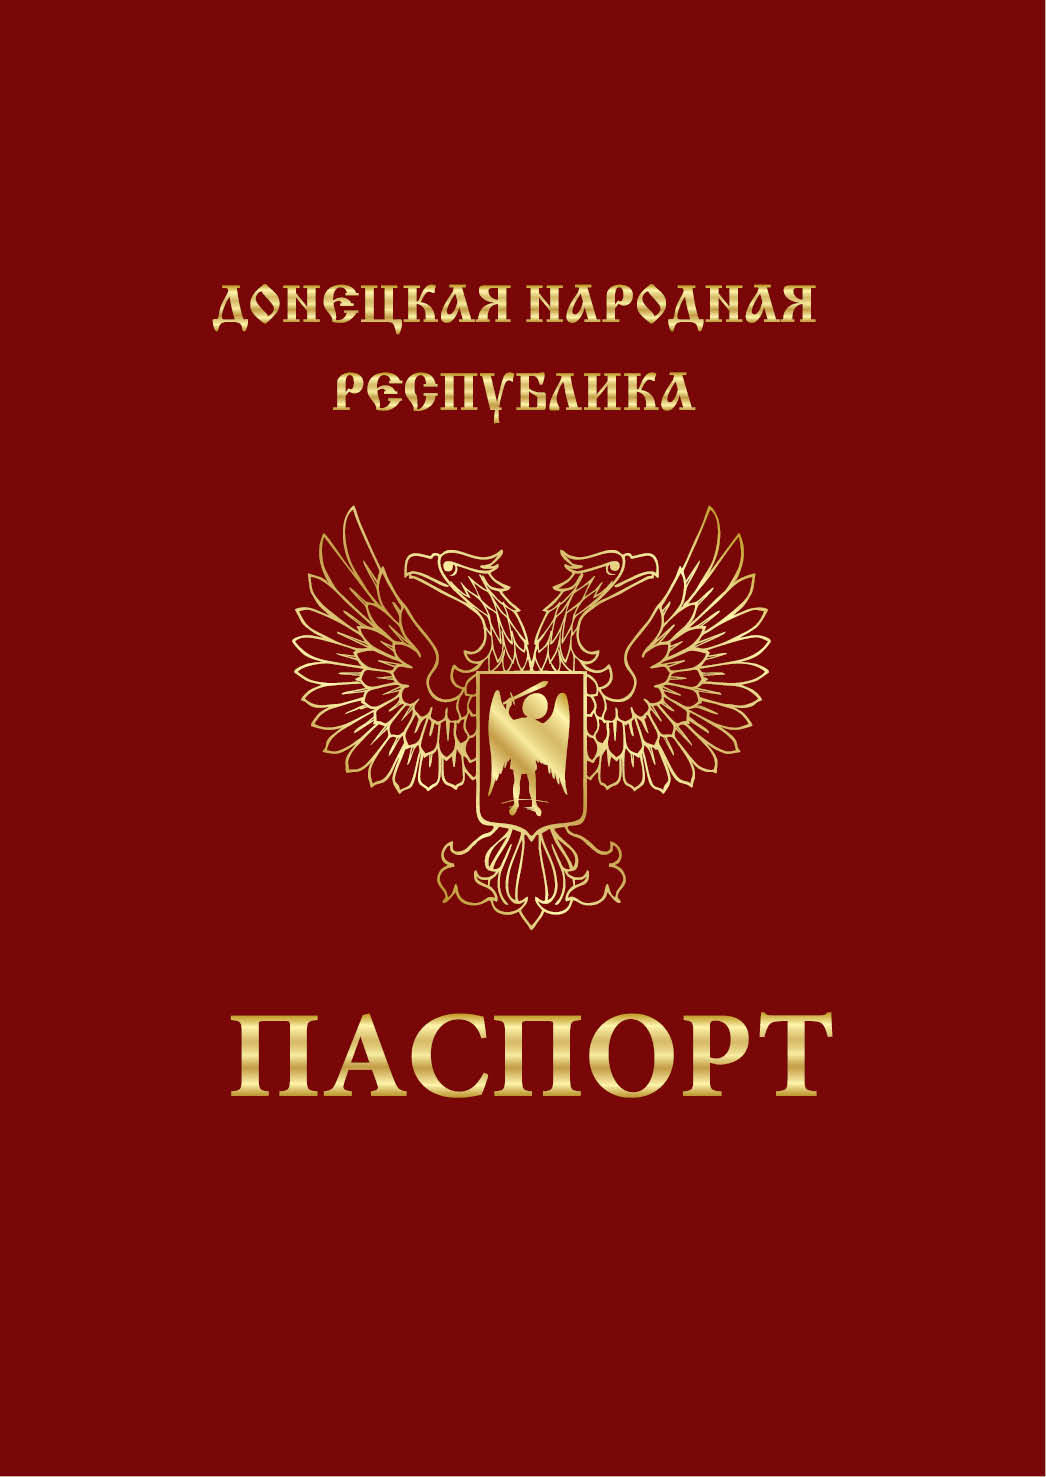 Вже підготовлений дизайн нового паспорта «громадянина республіки» з двоголовим орлом на обкладинці